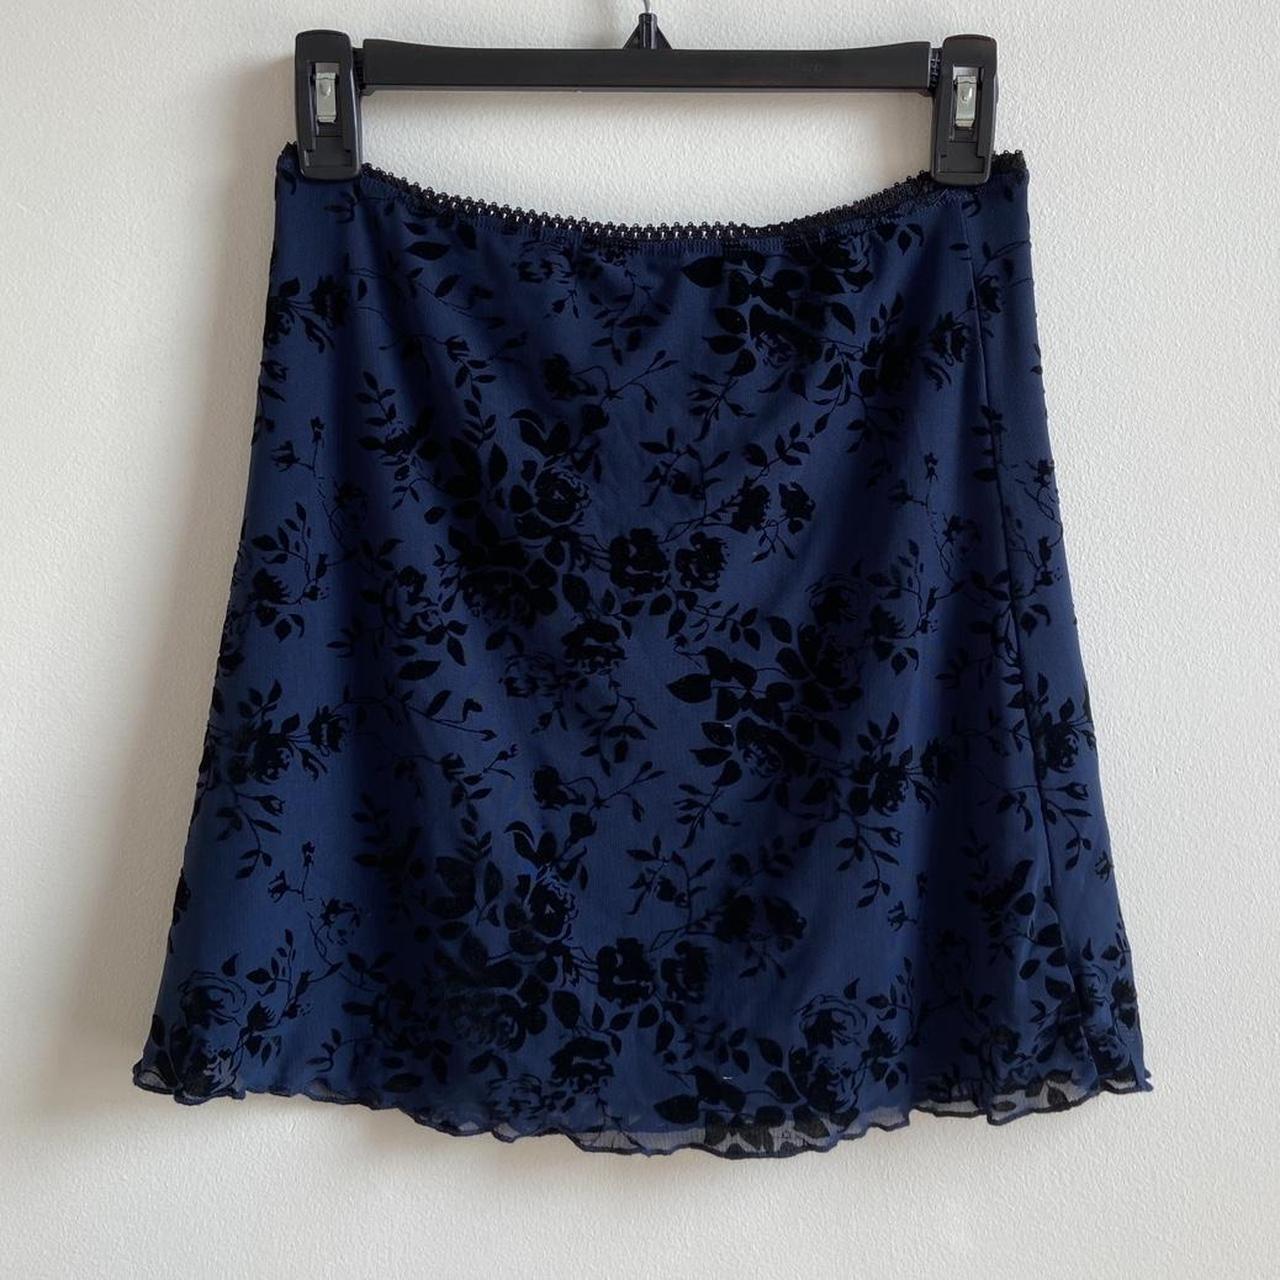 Delias Mini Skirt - Blue / Black Lace Floral... - Depop